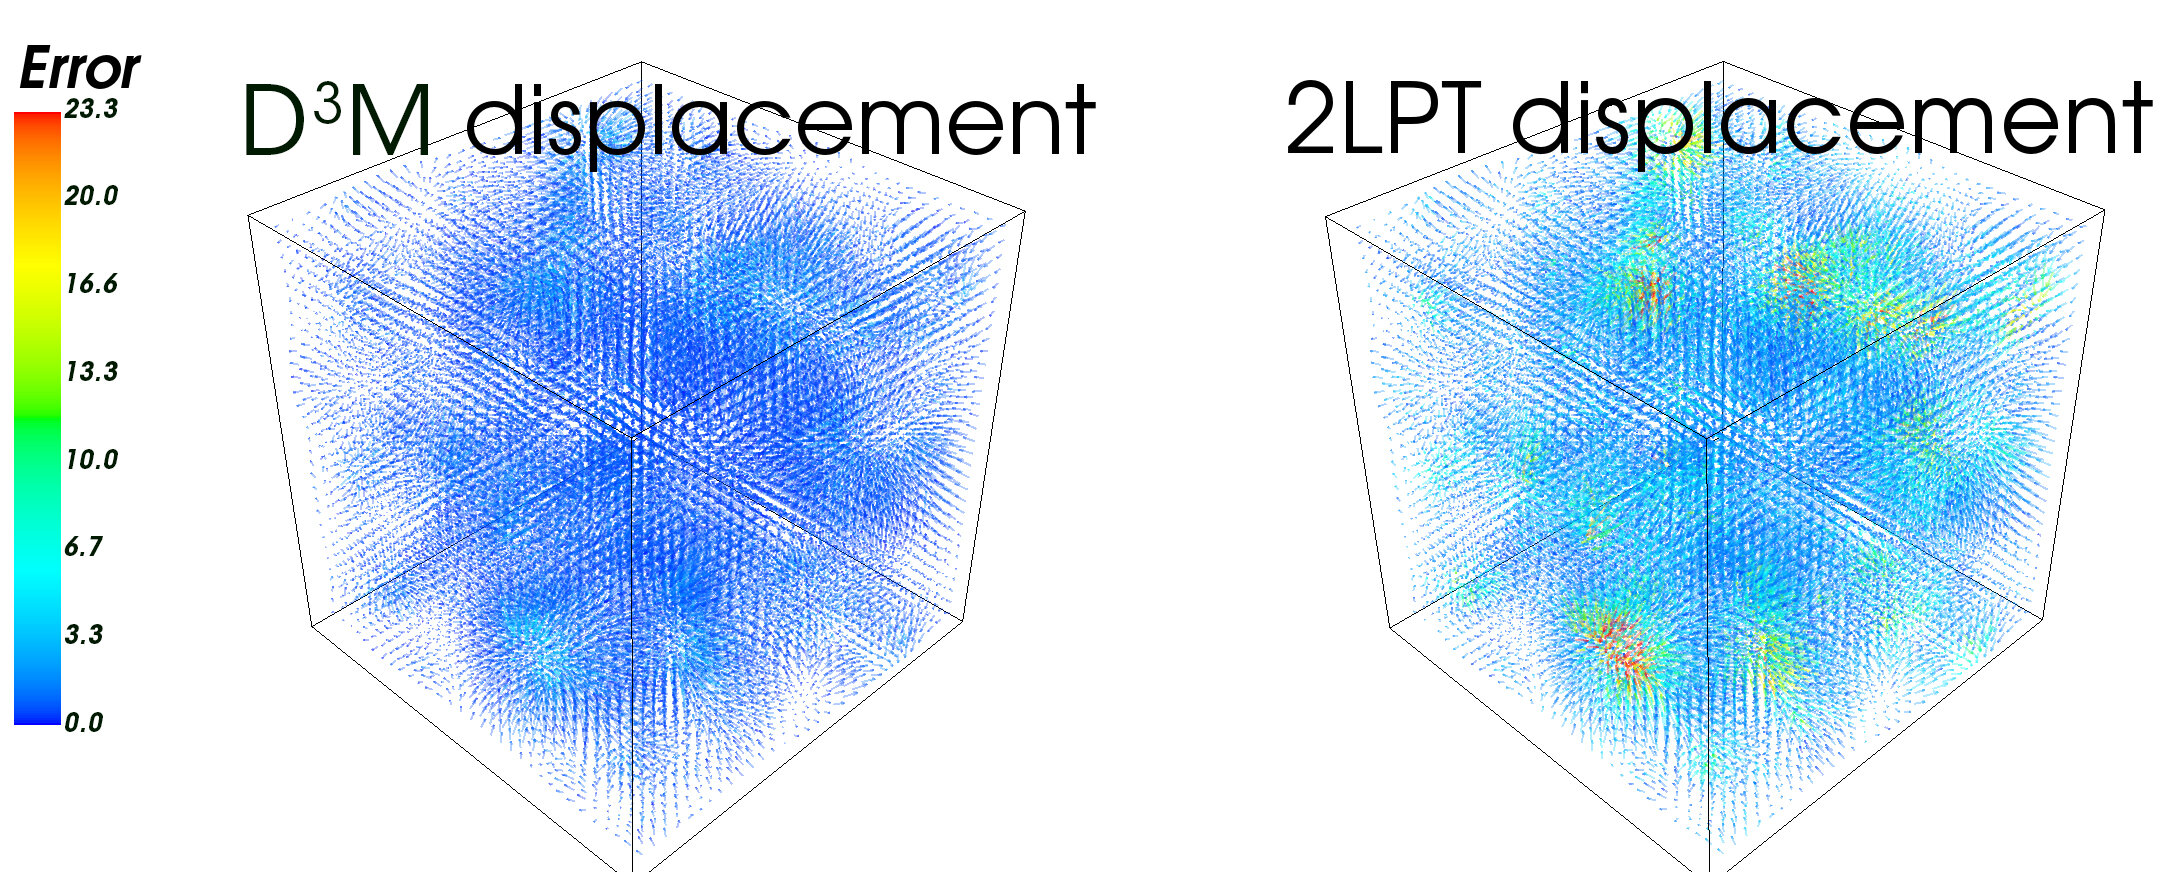 Porovnání modelů vesmíru s D3M a modelem 2LPT(second-order perturbation theory). Čím více jiných barev než je modrá, tím více chyb. Kredit: S. He et al. /PNAS 2019.